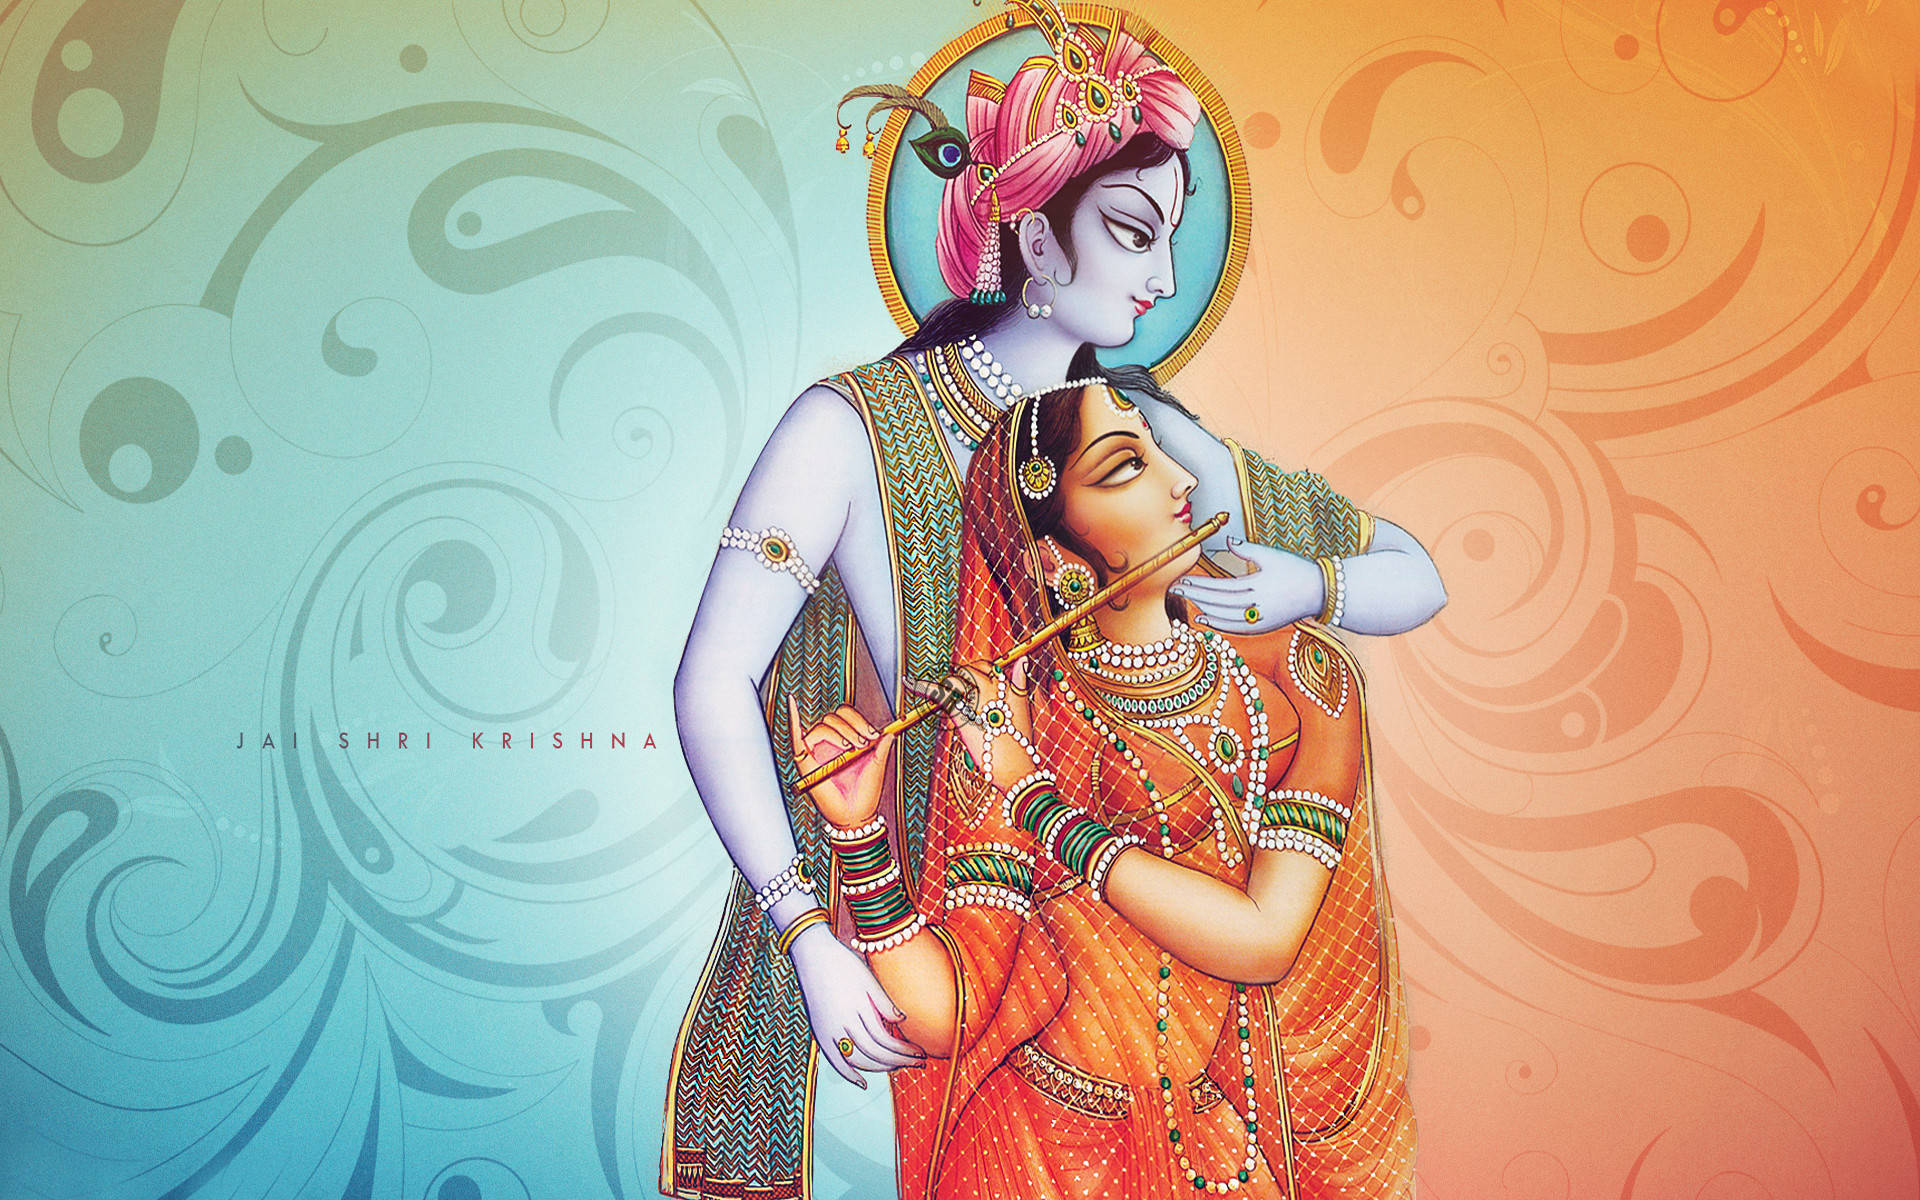 Radhaspielt Die Flöte Mit Krishna Als Hintergrundbild Für Den Desktop. Wallpaper